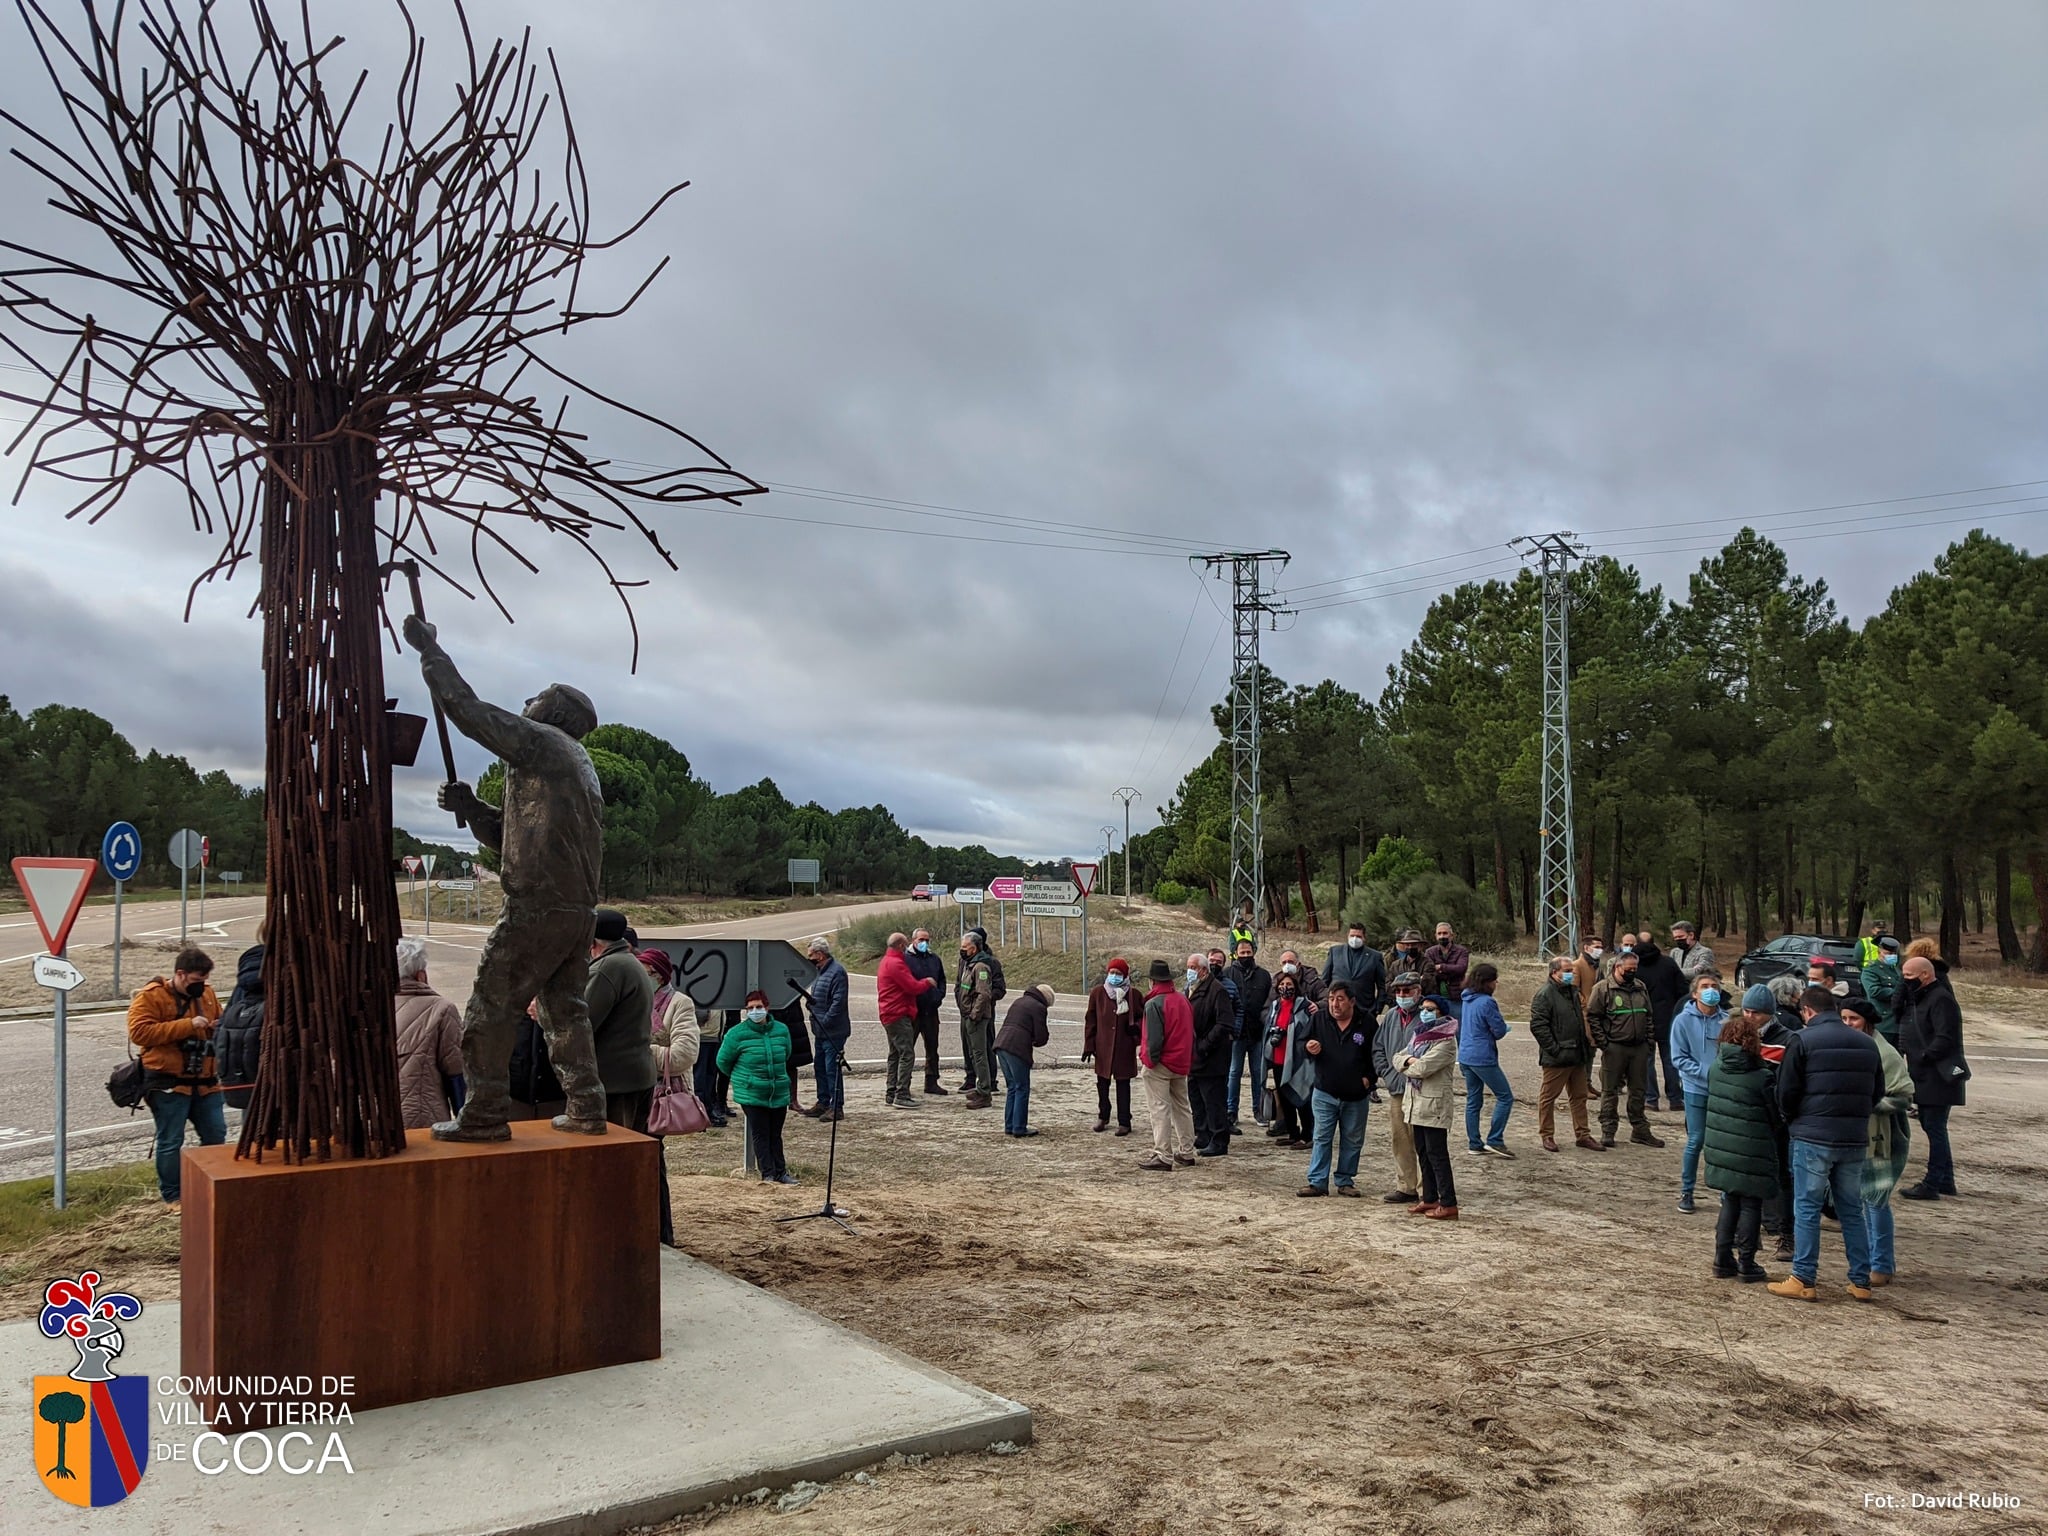 La Comunidad de Villa y Tierra de Coca homenajea a los resineros con una estatua